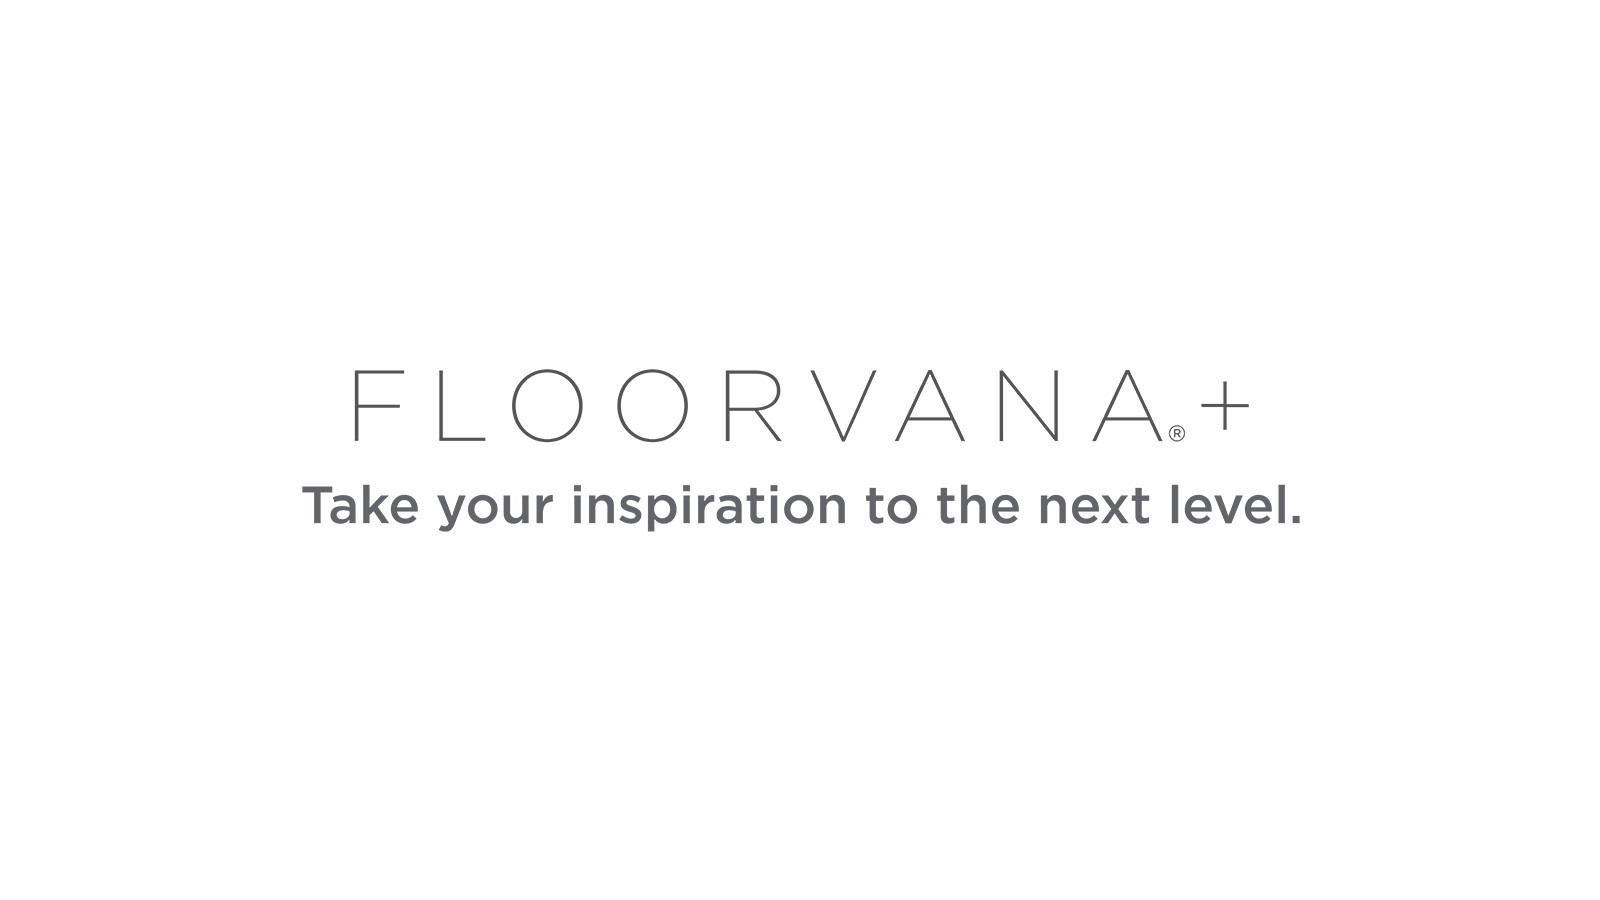 Floorvana-Plus-Logo-Signature